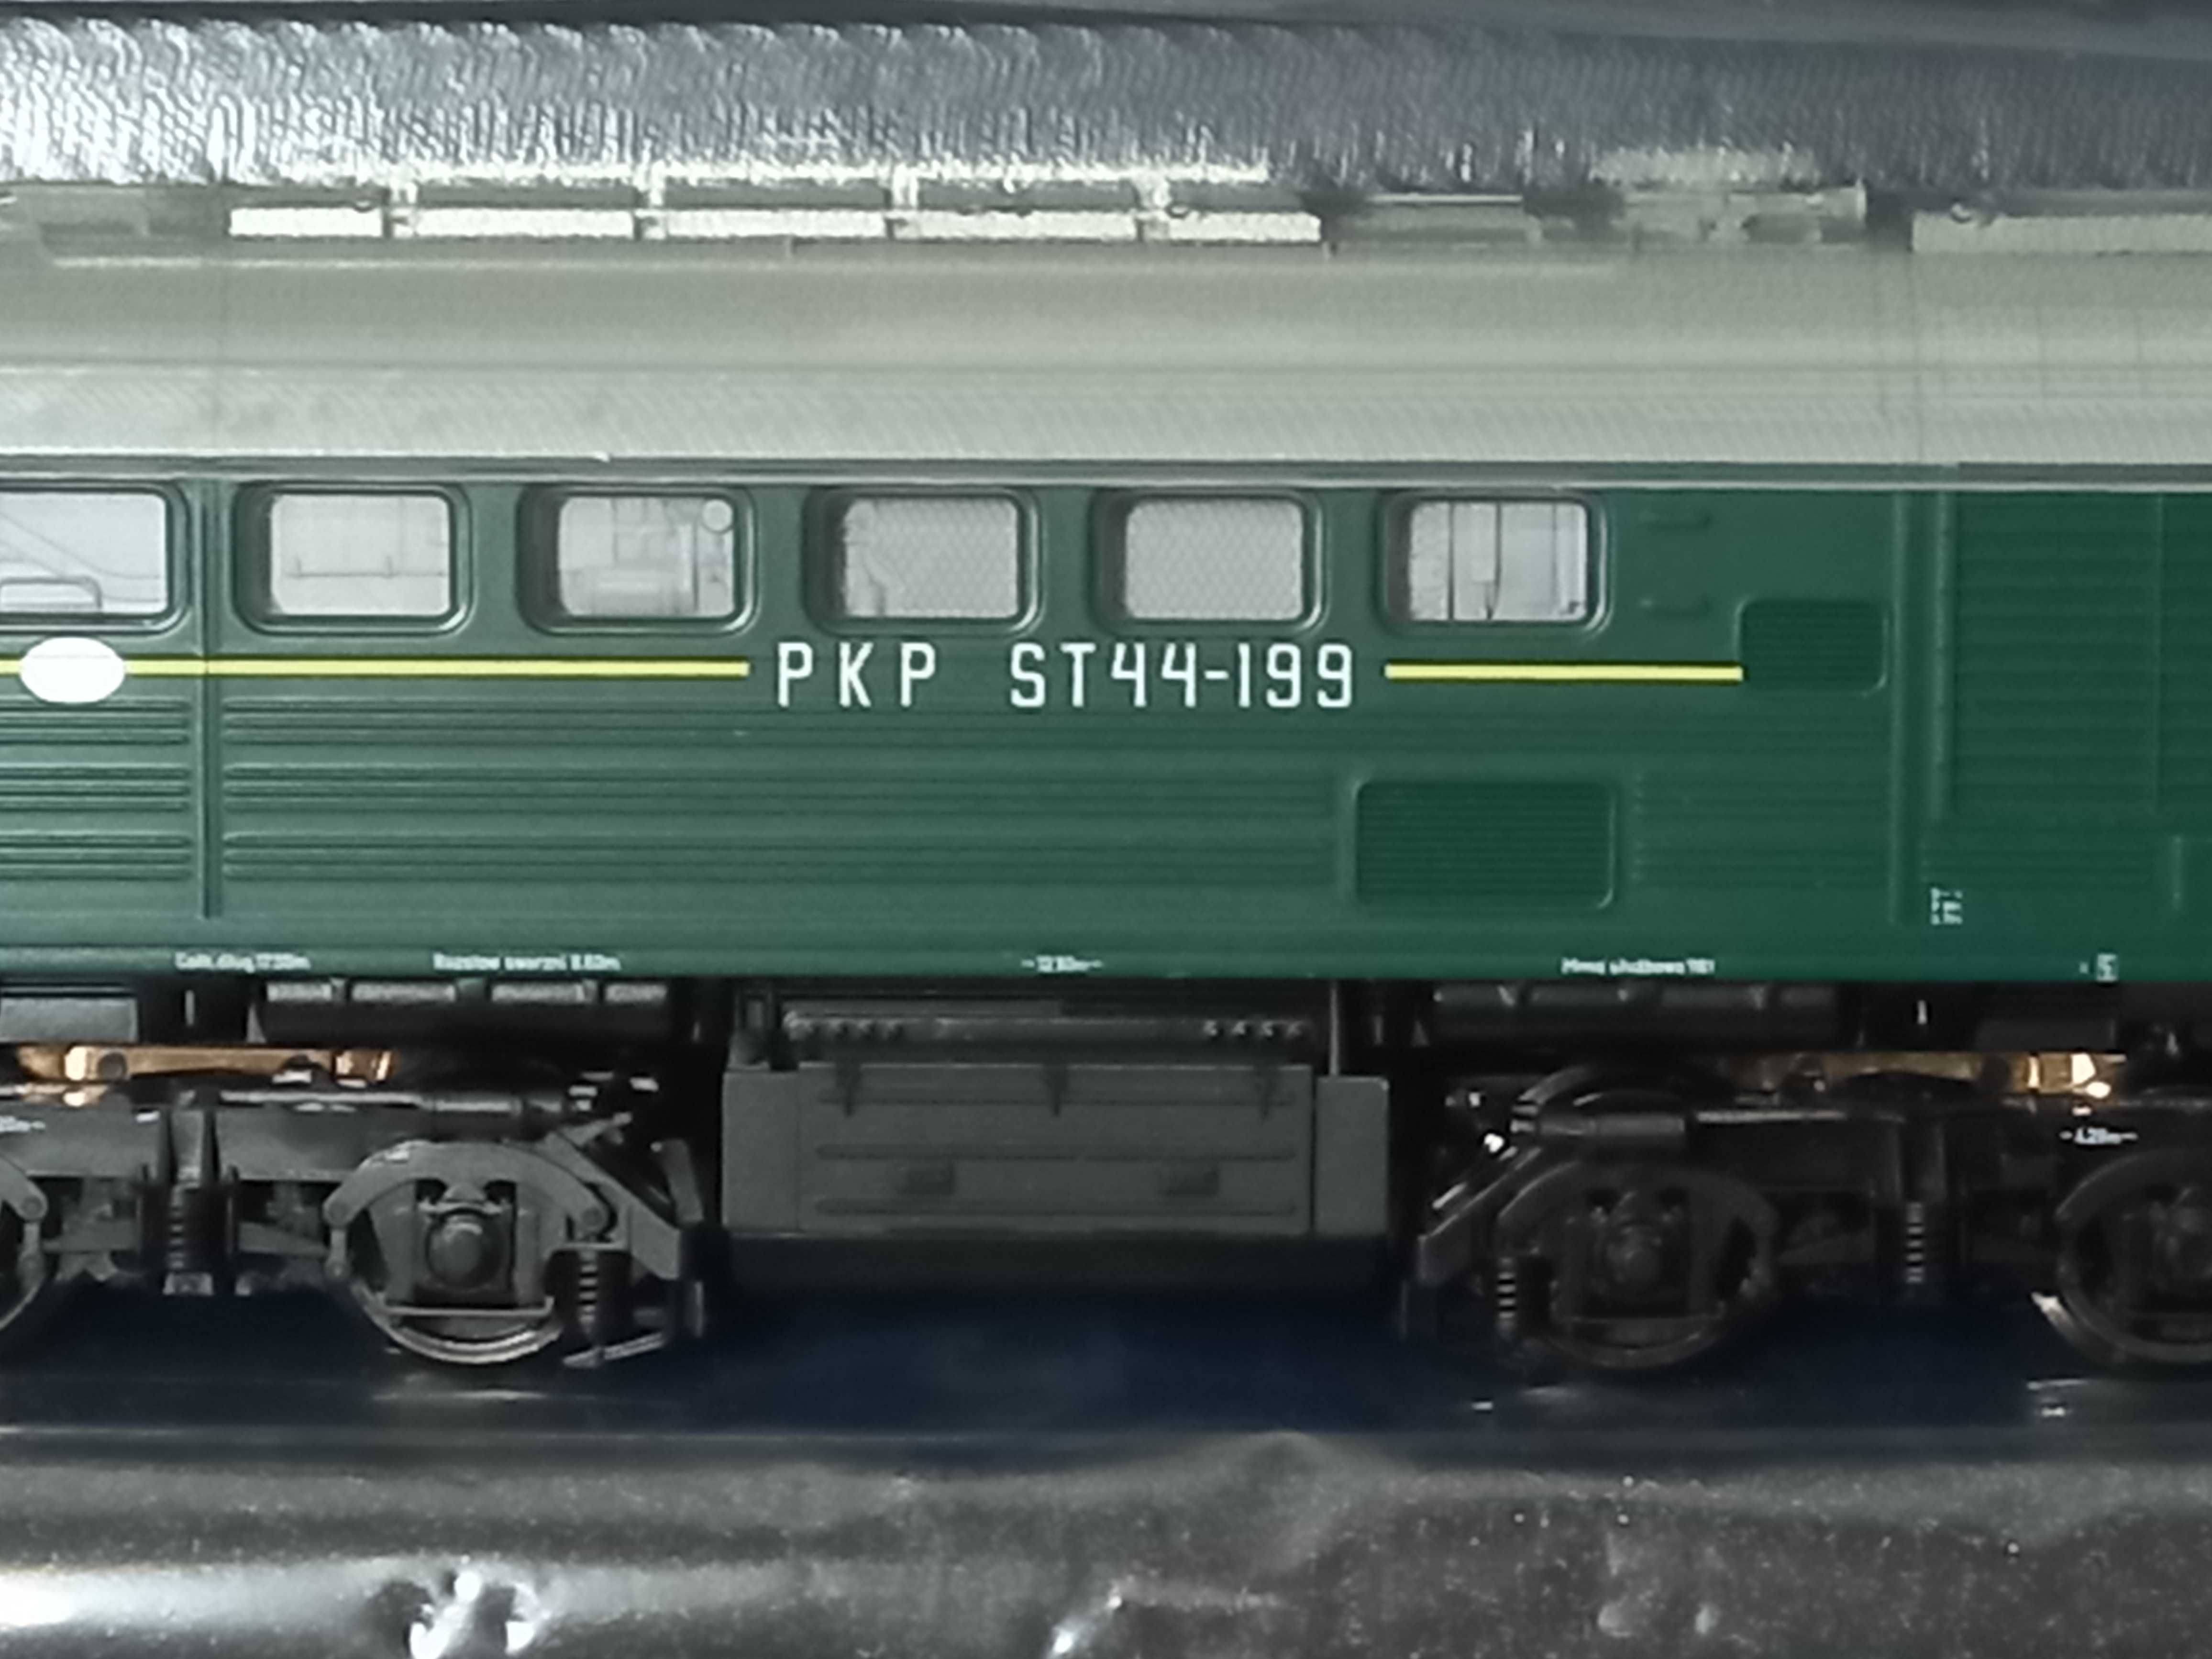 Fabrycznie nowa lokomotywa spalinowa ST44-199 Roco 62765